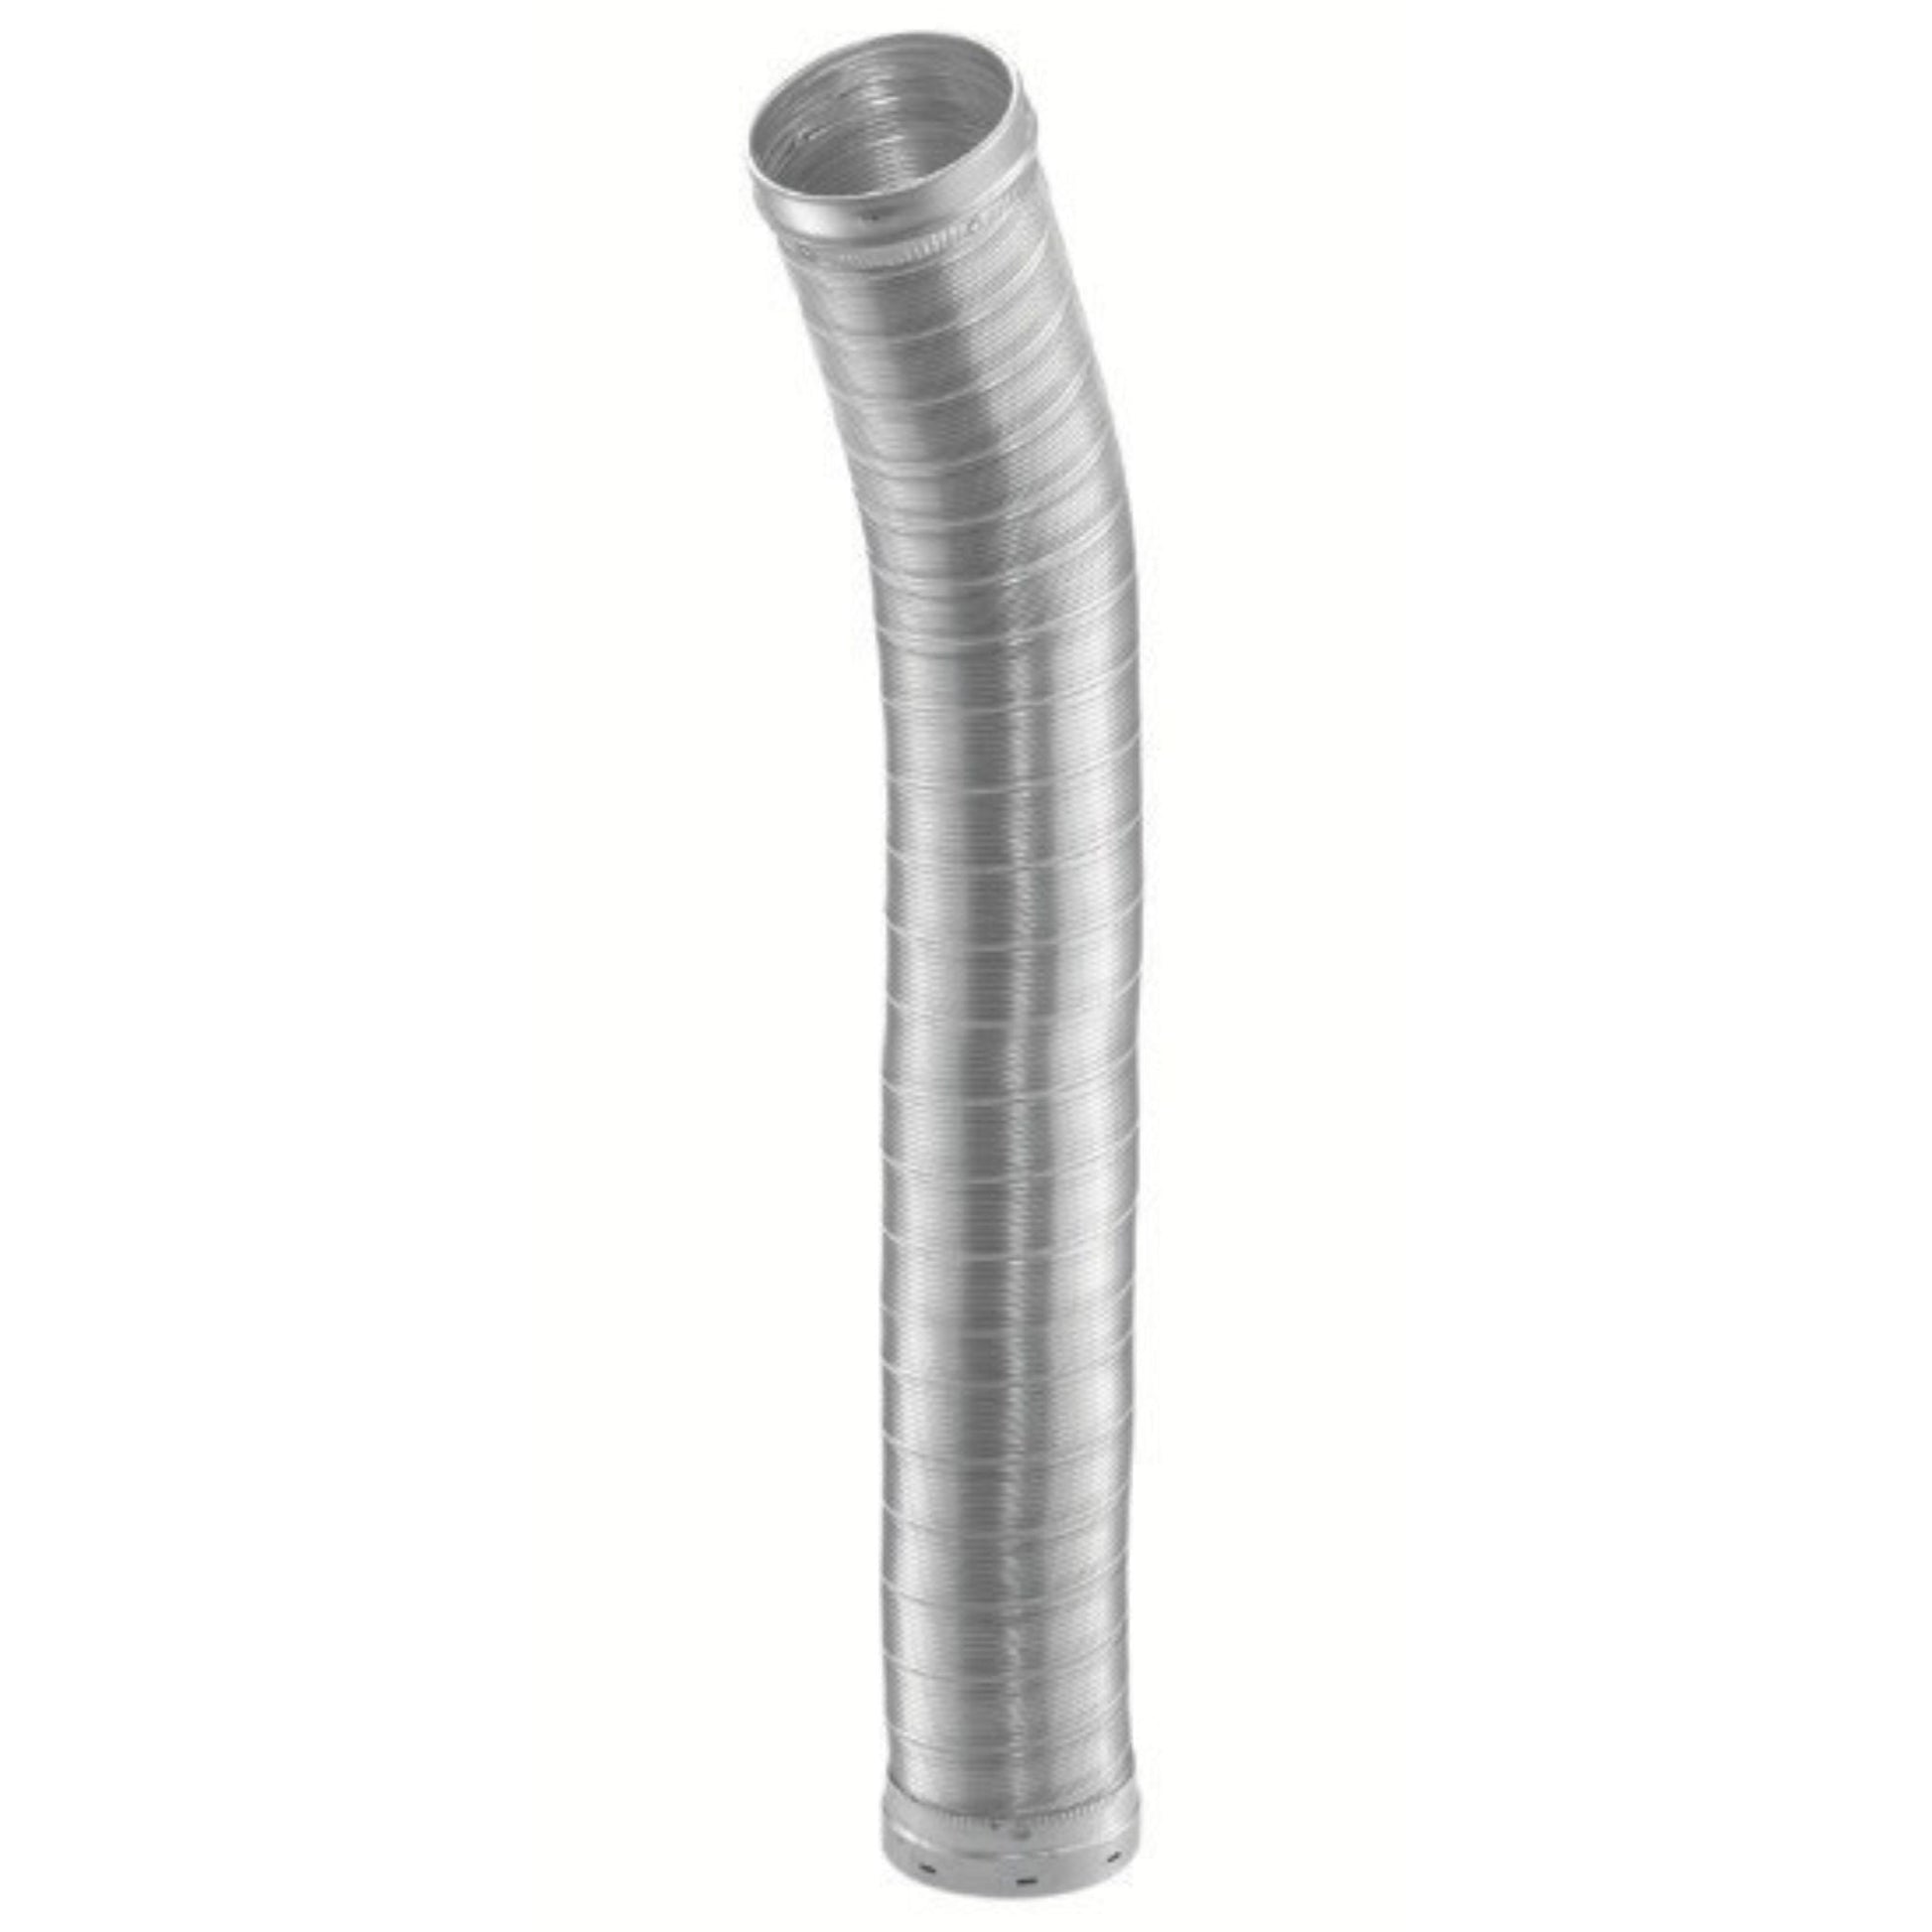 DuraVent DuraLiner 8" x 36" Round-To-Round Stainless Steel Flex Pipe